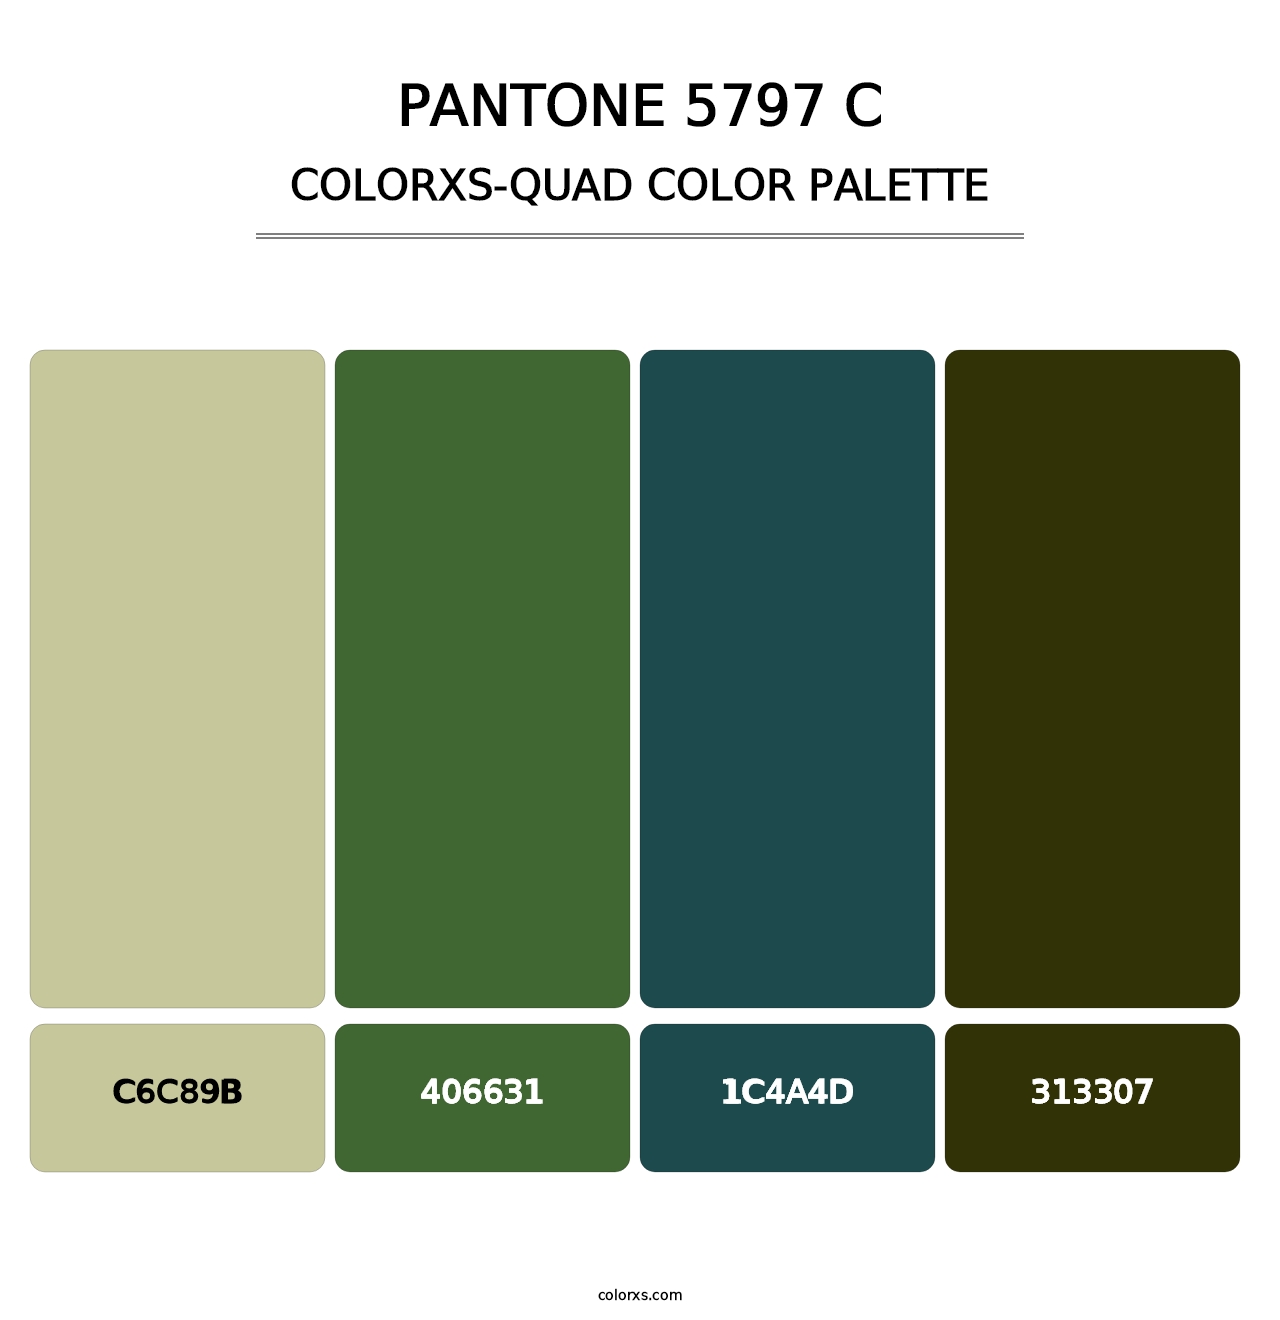 PANTONE 5797 C - Colorxs Quad Palette